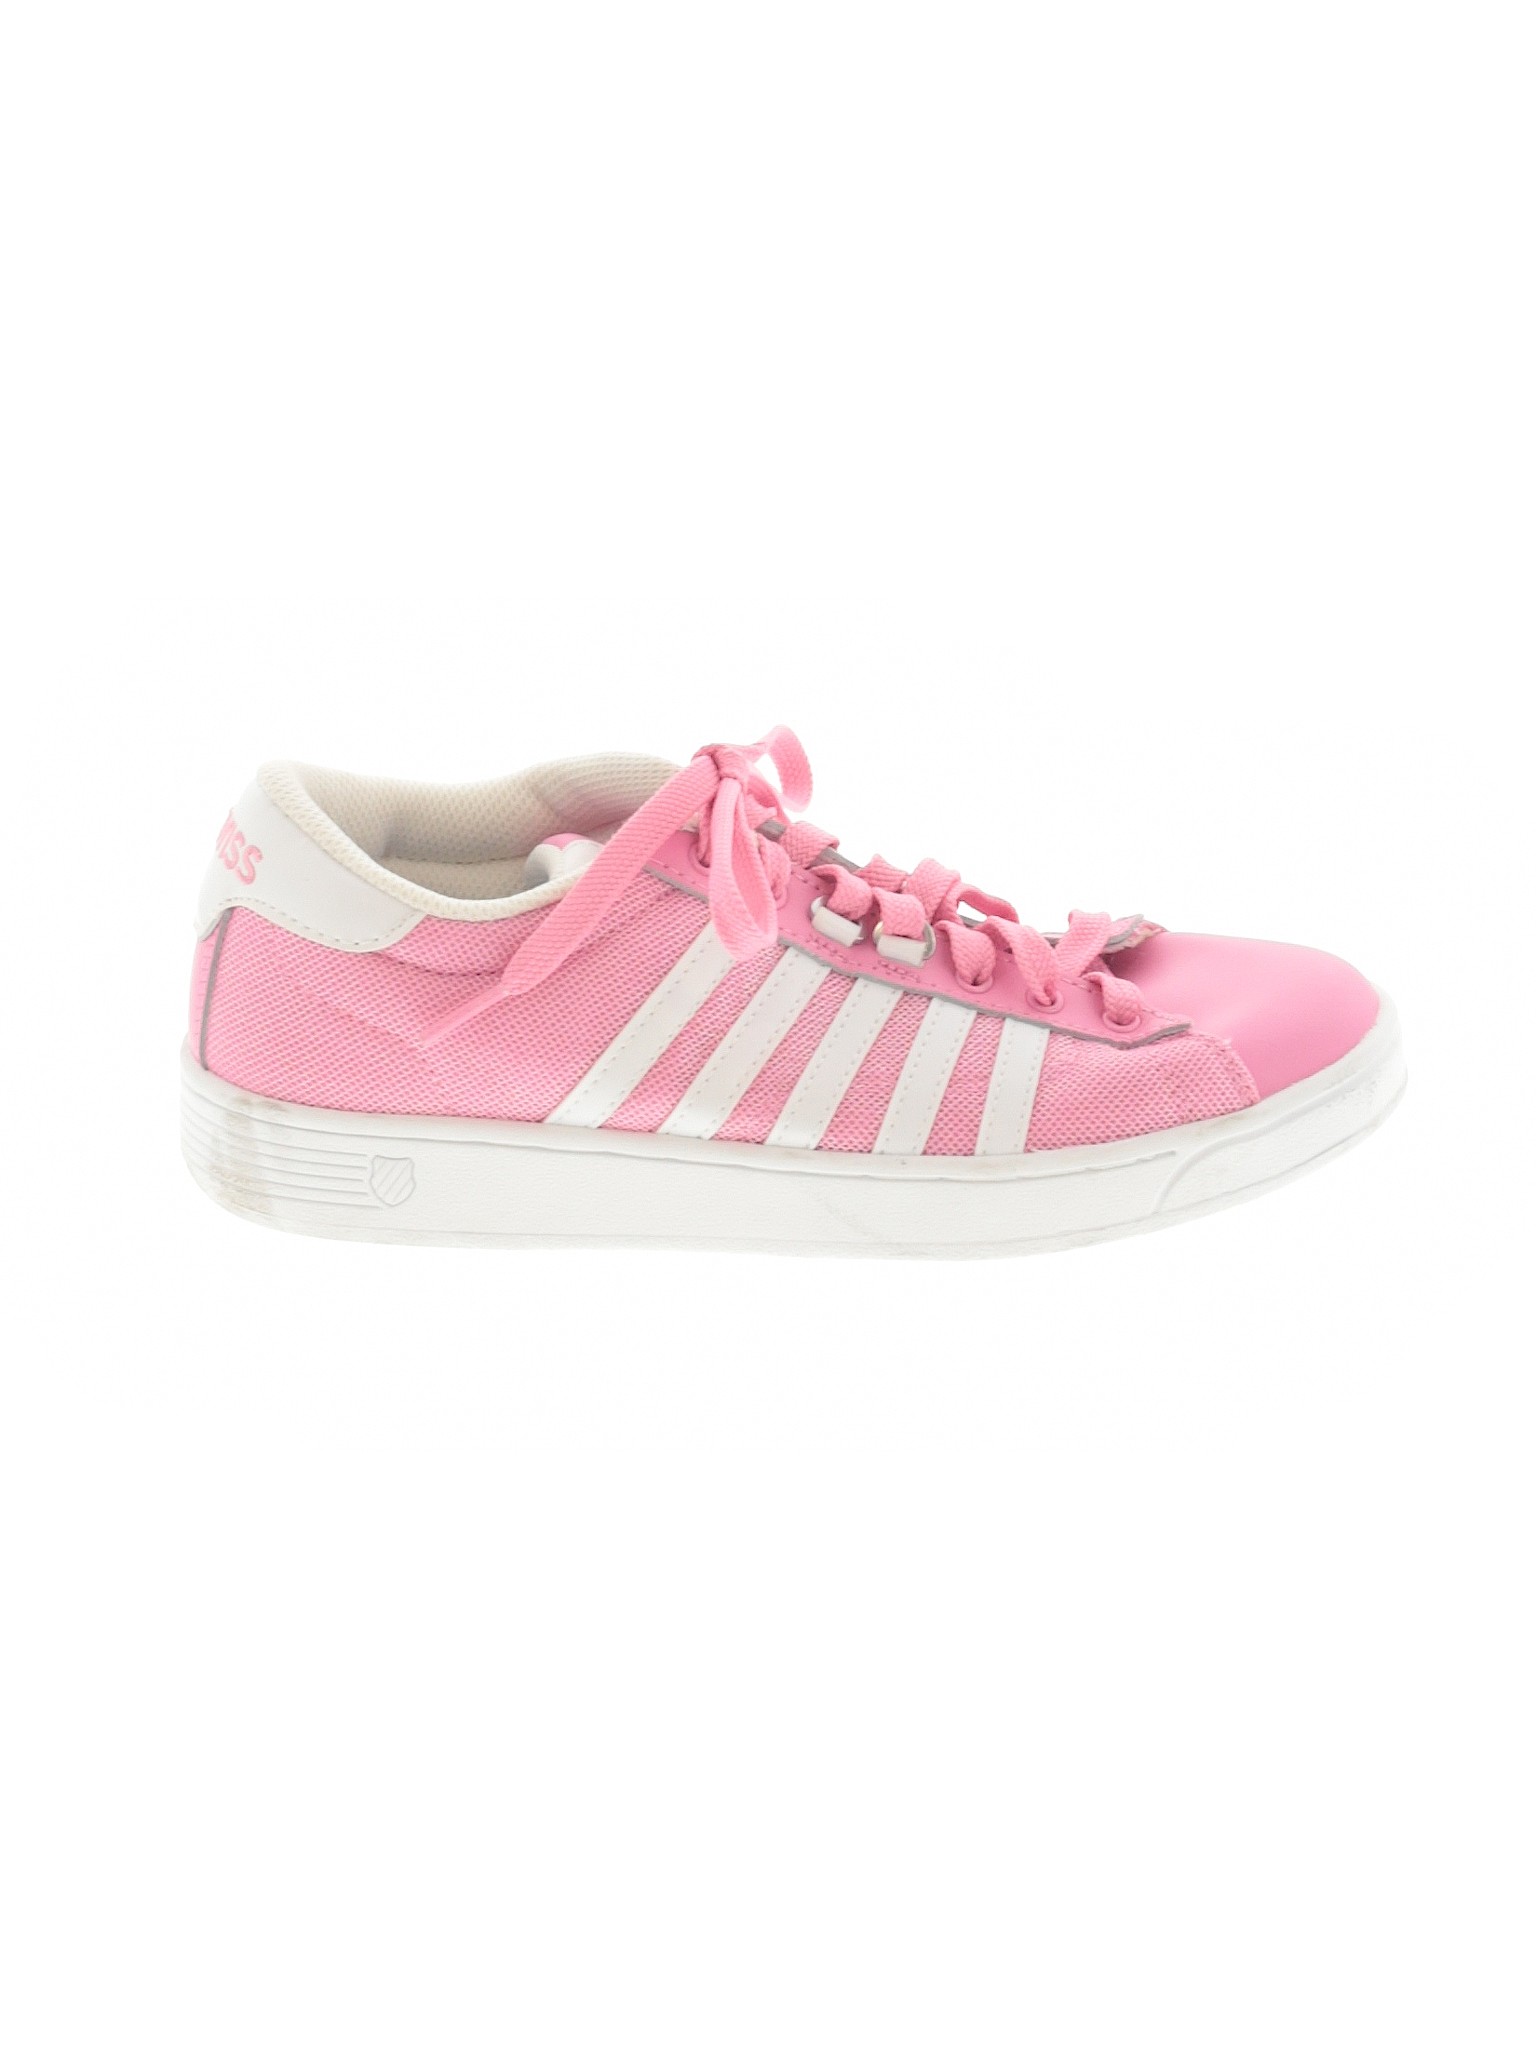 K-Swiss Women Pink Sneakers US 6.5 | eBay